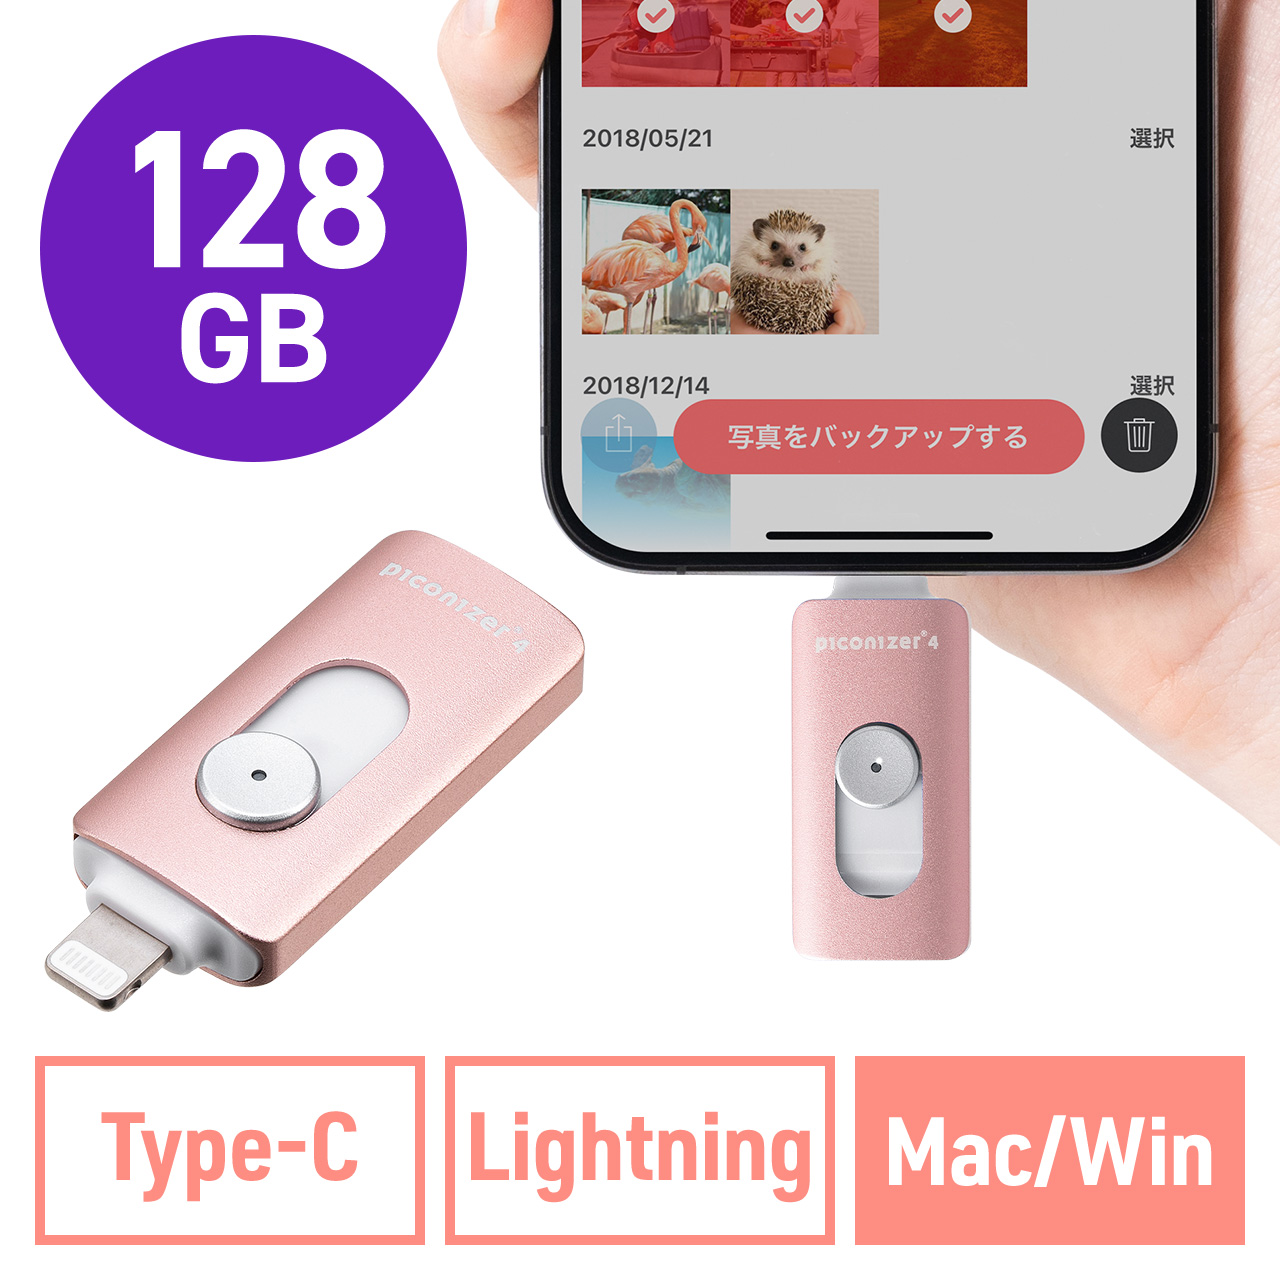 Lightning/Type-C USBメモリ 128GB ローズゴールド iPhone Android